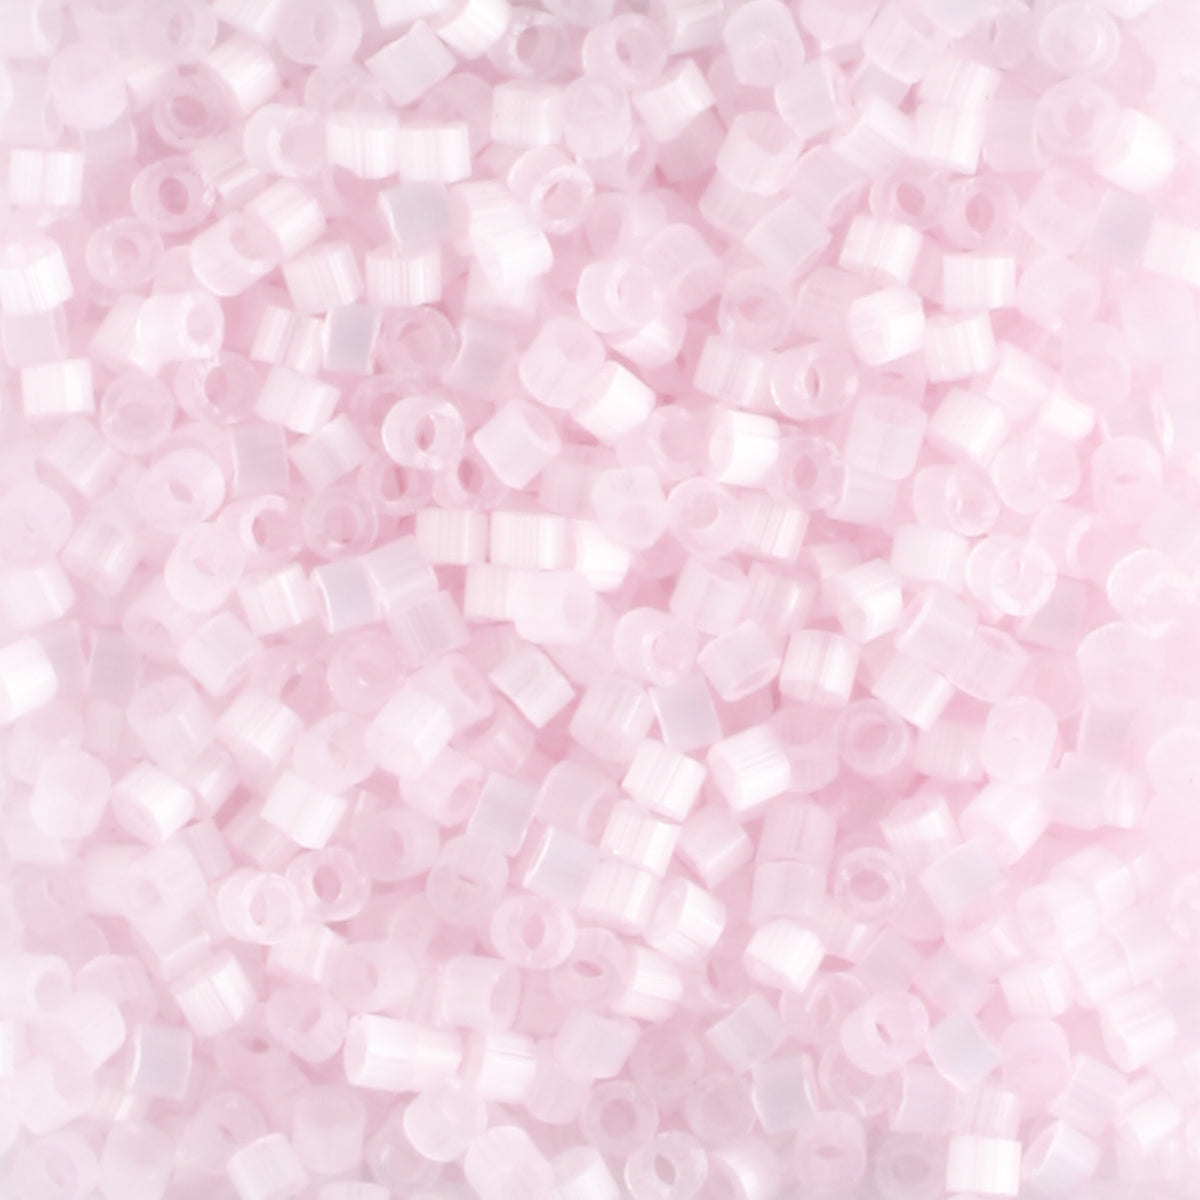 DB0675 Icy Pink Satin - 5 grams